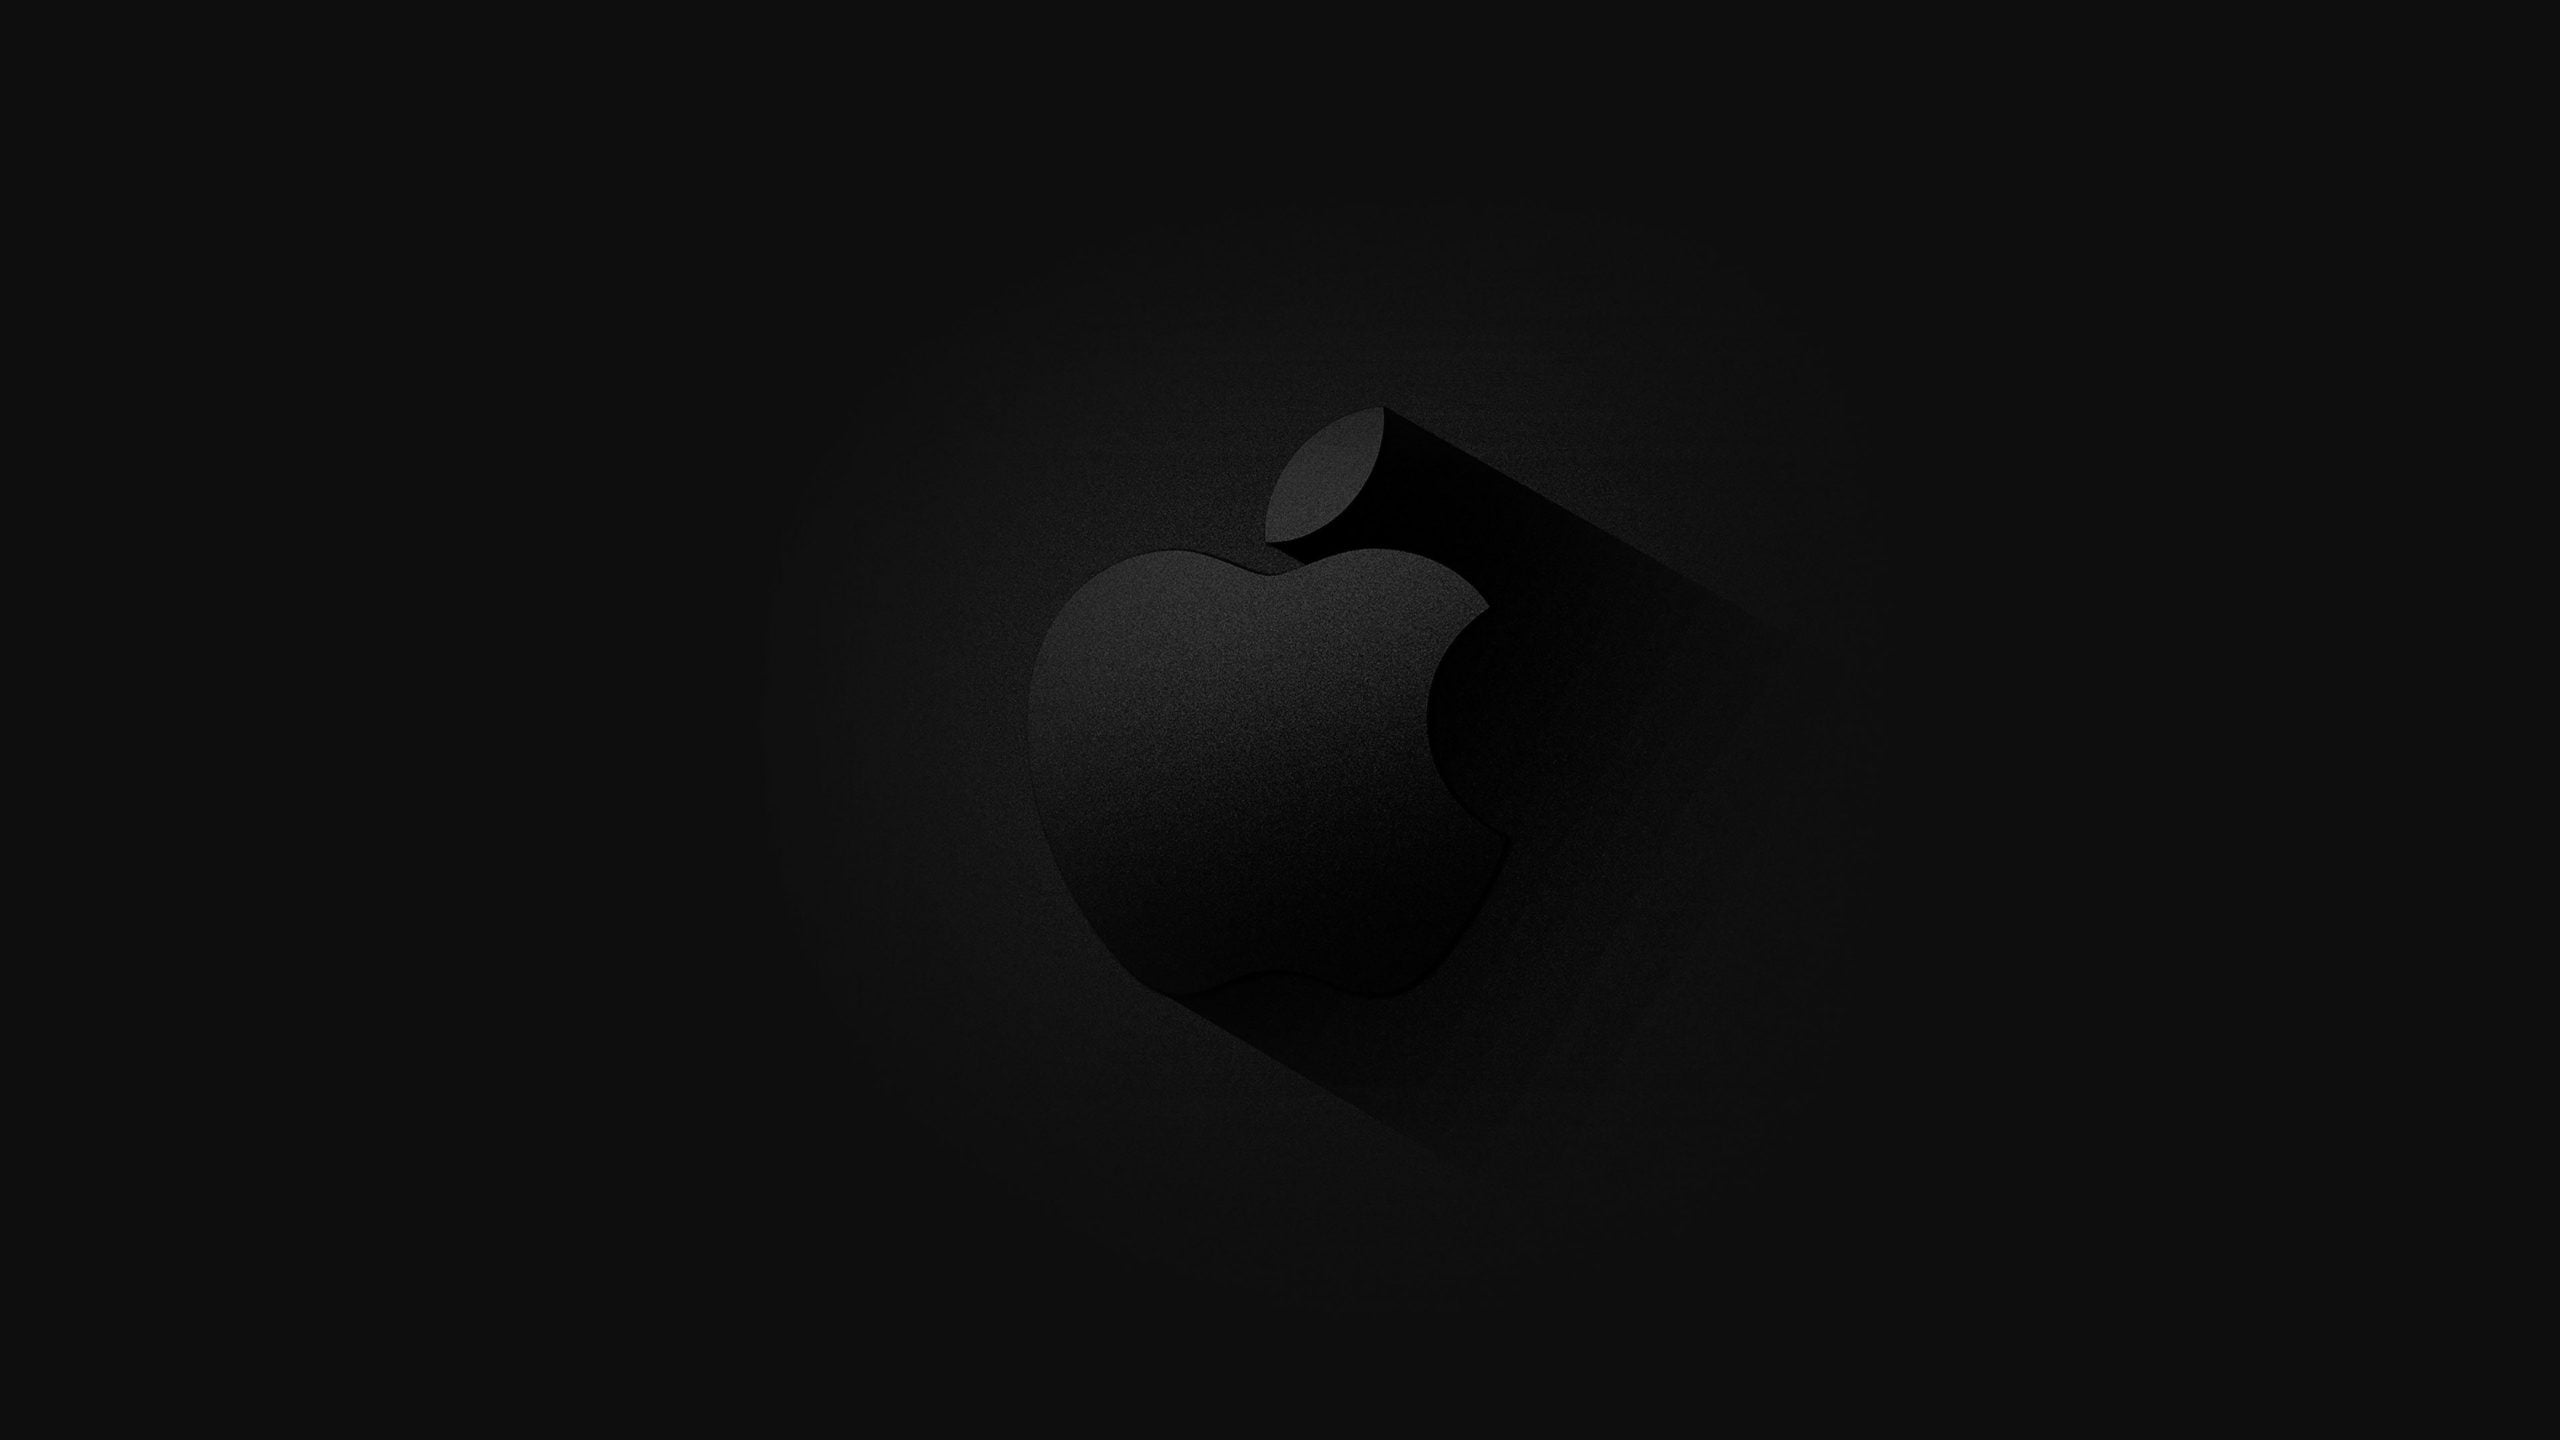 Hình ảnh quả táo apple tối